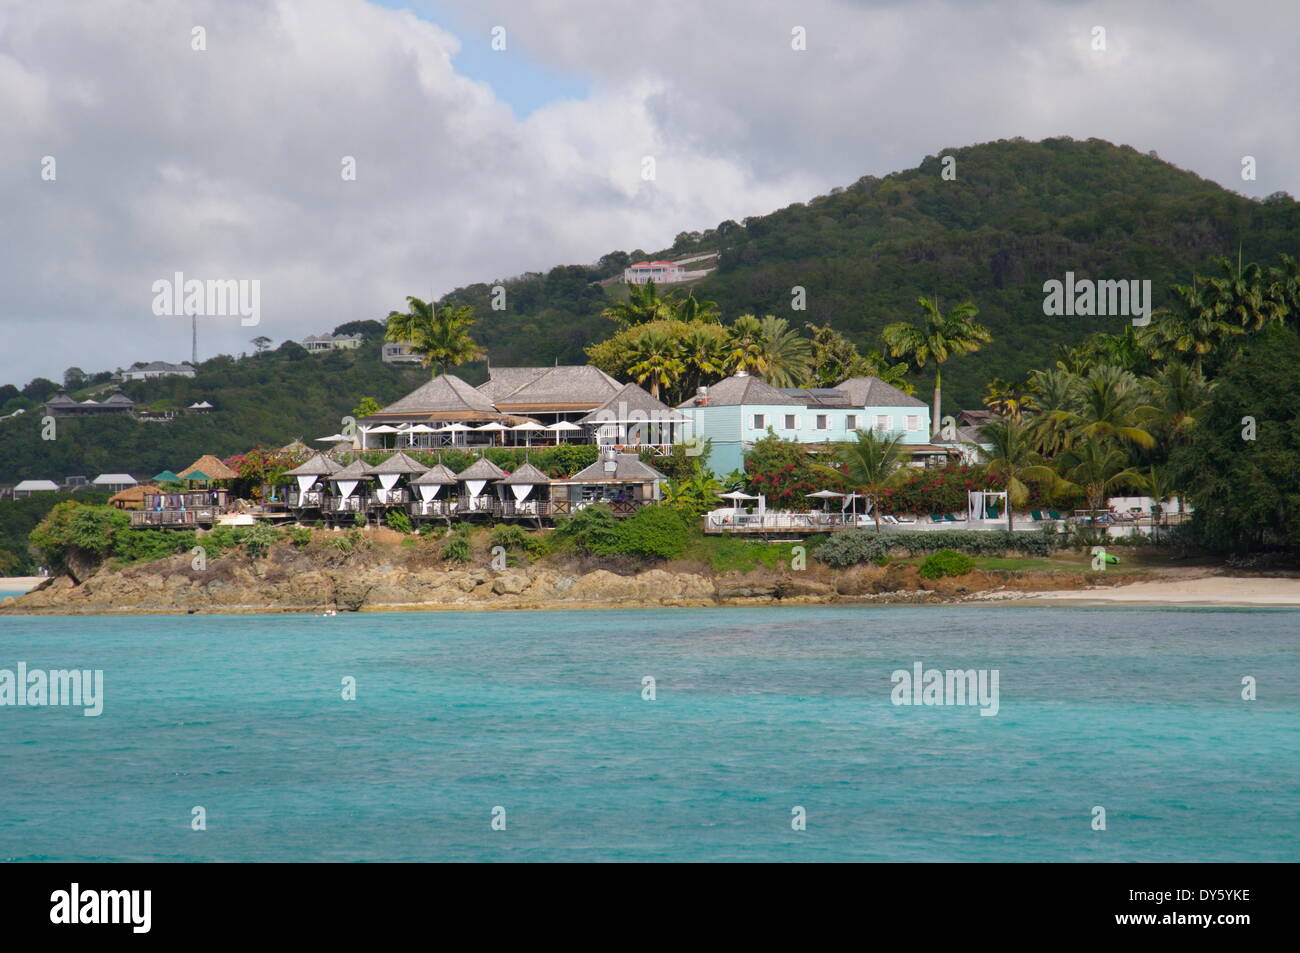 Côte ouest, Antigua, Iles sous le vent, Antilles, Caraïbes, Amérique Centrale Banque D'Images